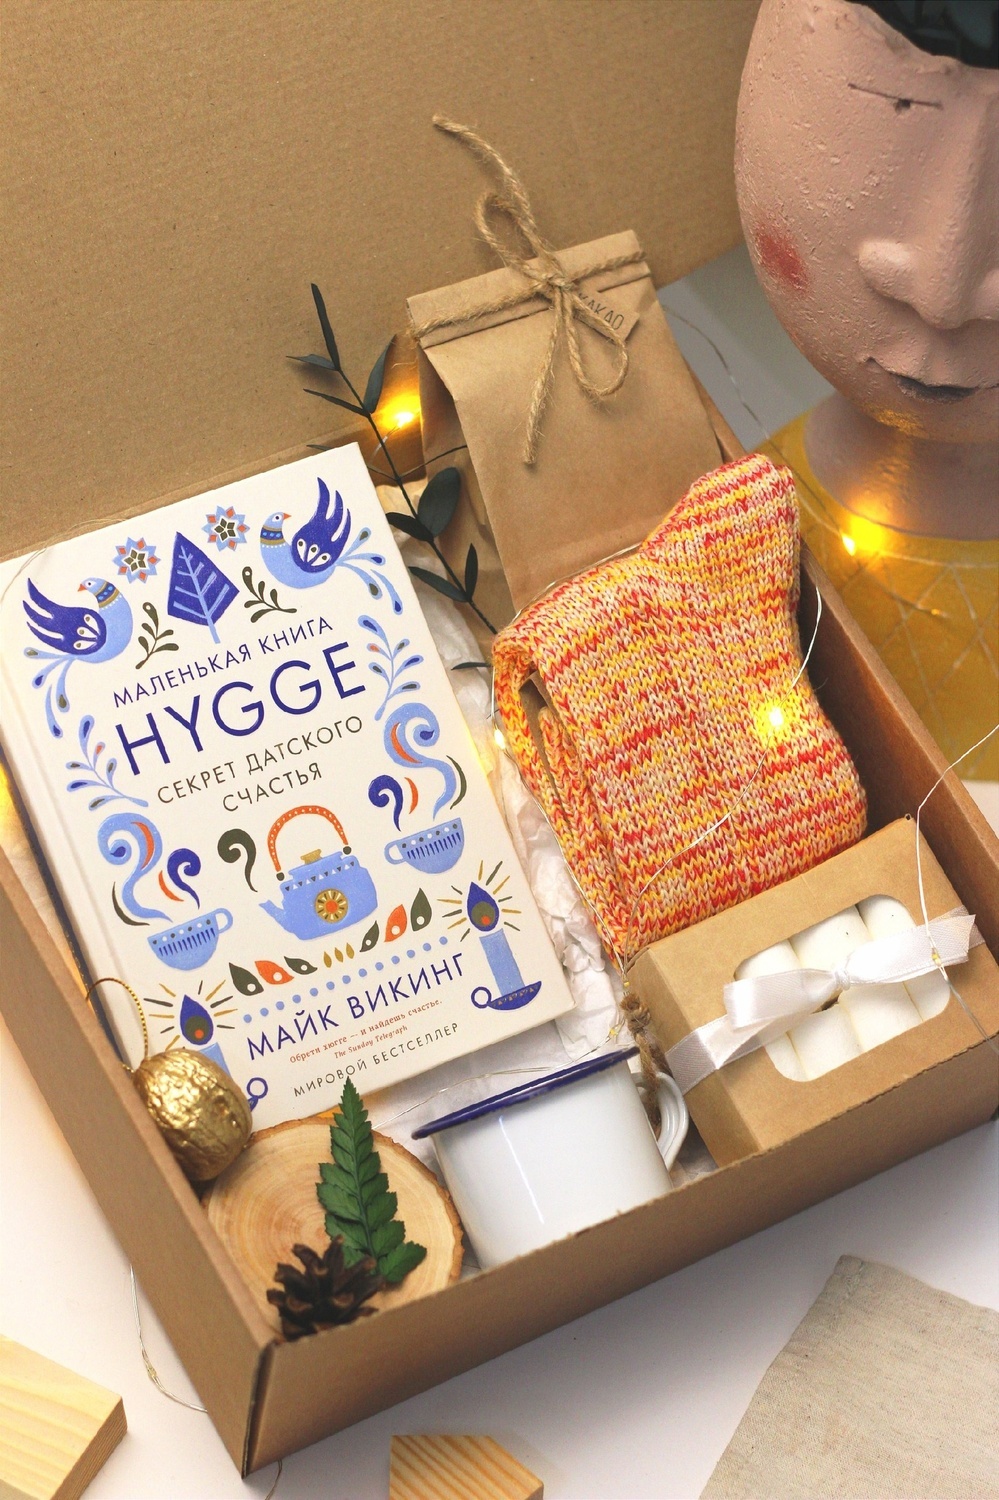 Светящийся подарочный бокс "Hygge" со свечой, книгой, теплыми носками, какао, маршмеллоу и орешком с предсказанием